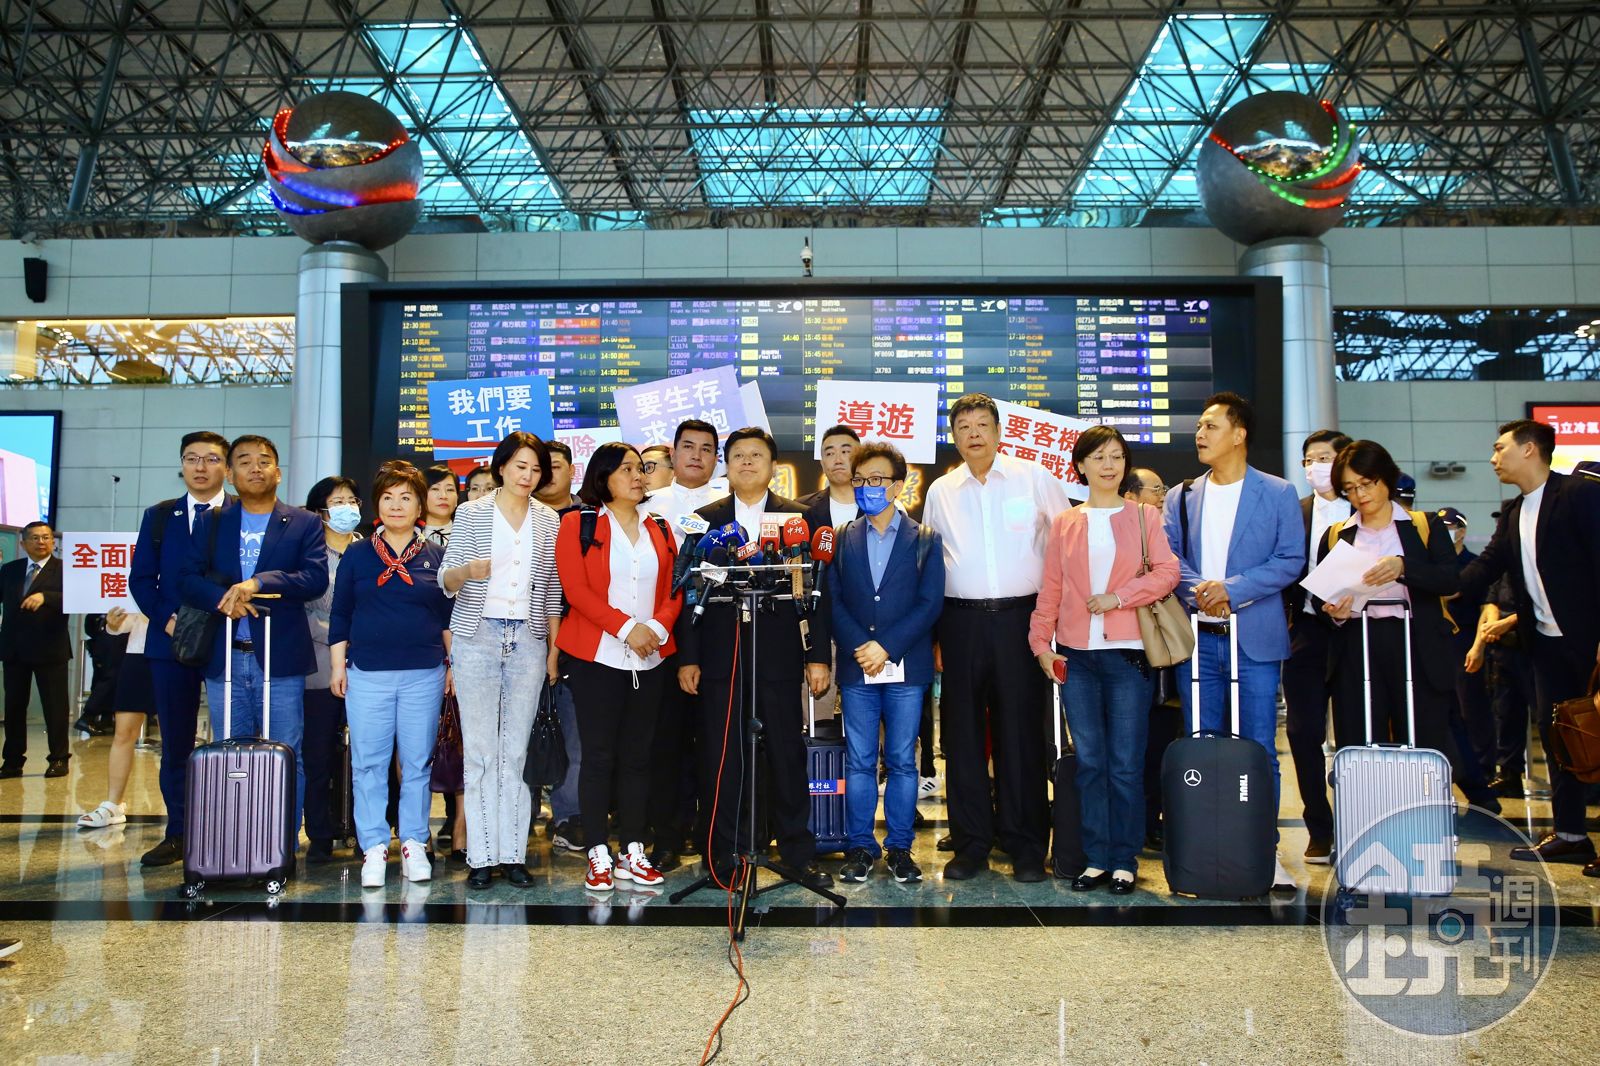 傅崐萁這次共率領17名國民黨立委訪問中國。